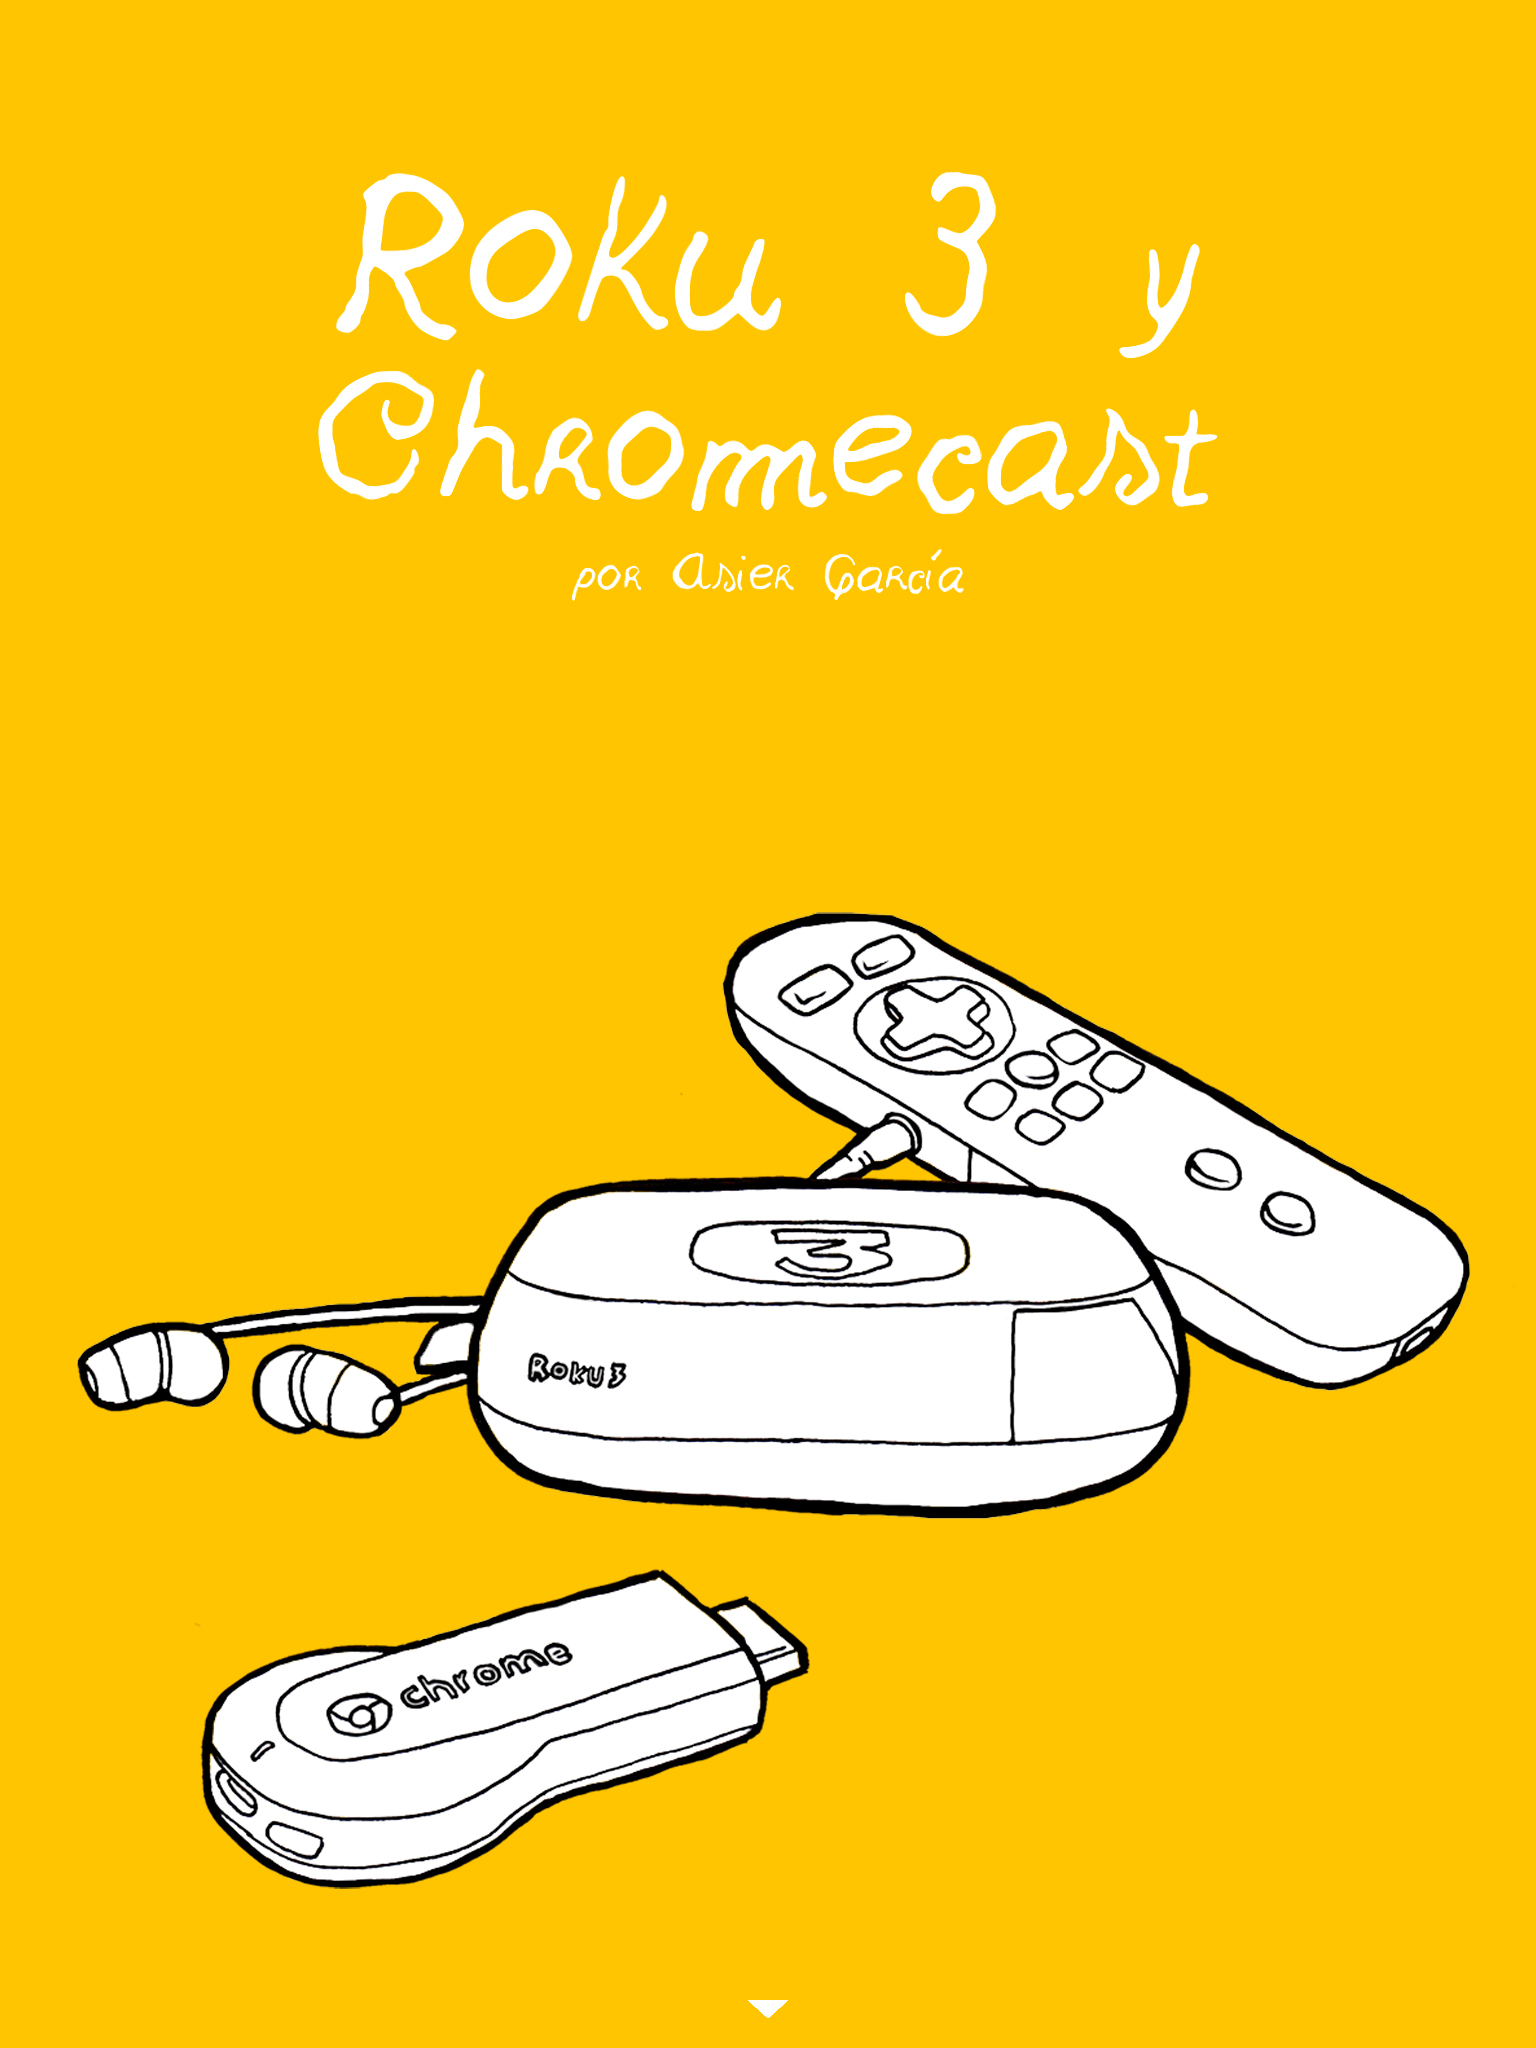 Roku y chromecast. Continúa abajo el artículo